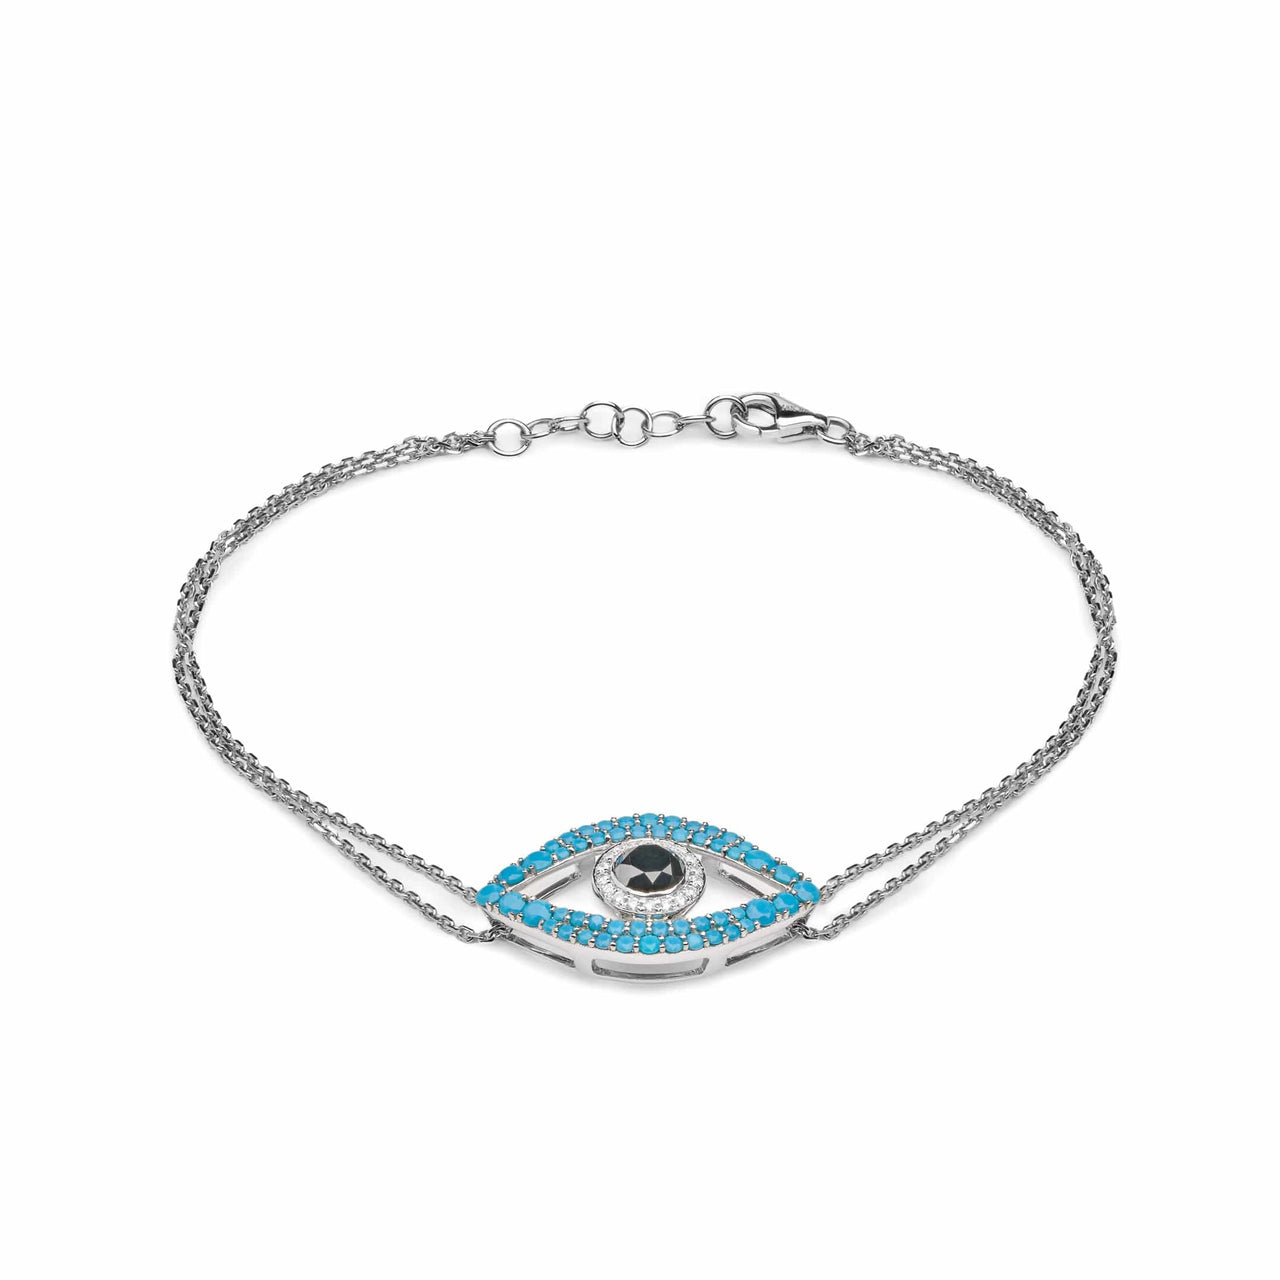 Bracelets Evil Eye Turquoise, Black Diamond and White Diamond Halo White Gold Double Chain Bracelet Wrist Aficionado